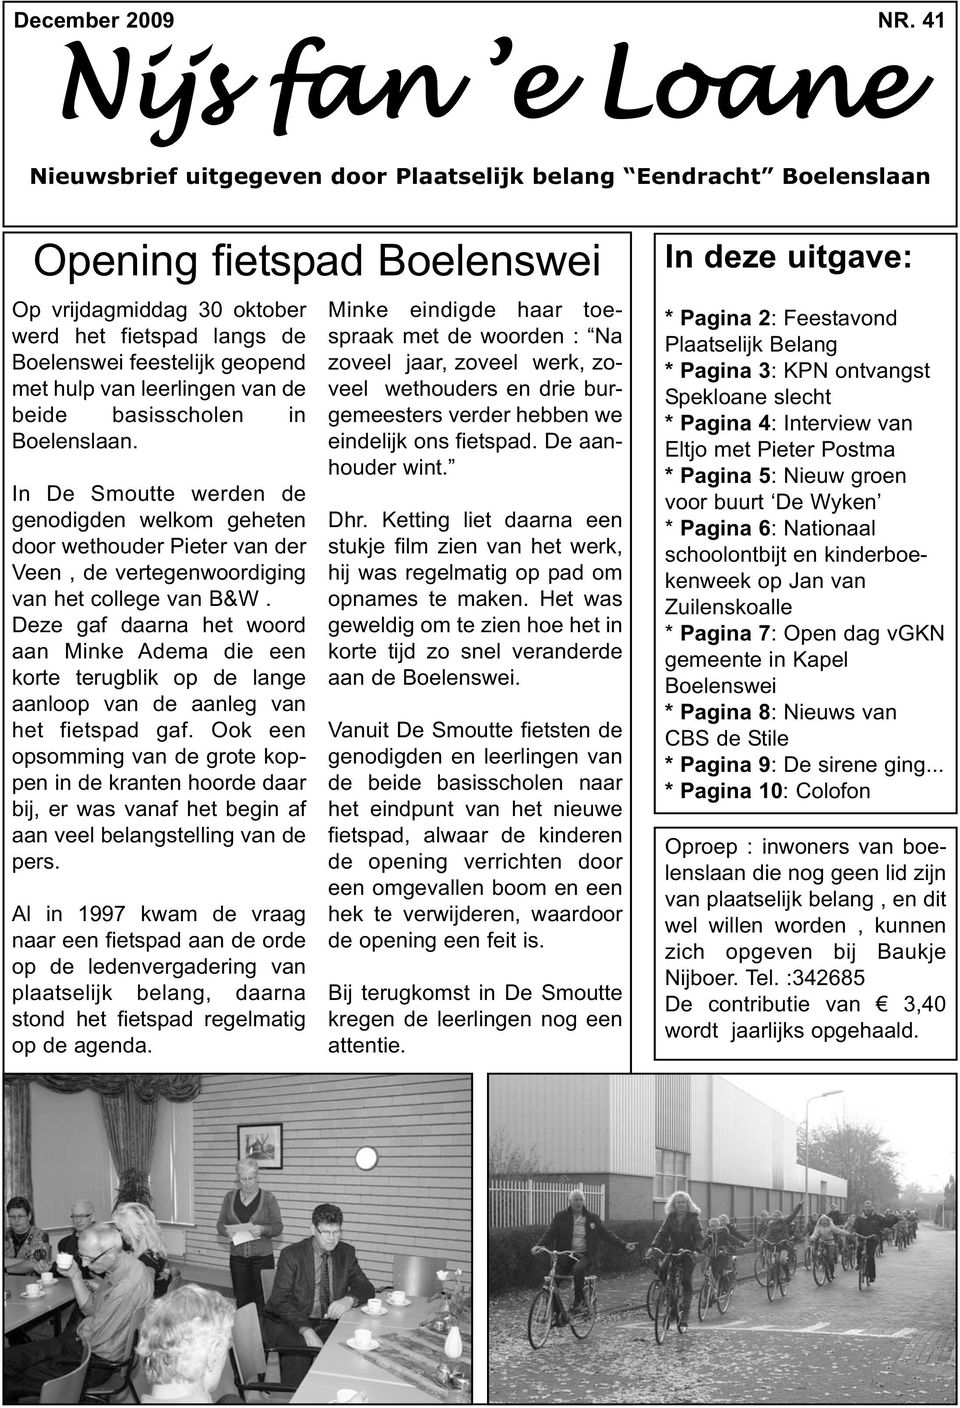 geopend met hulp van leerlingen van de beide basisscholen in Boelenslaan.